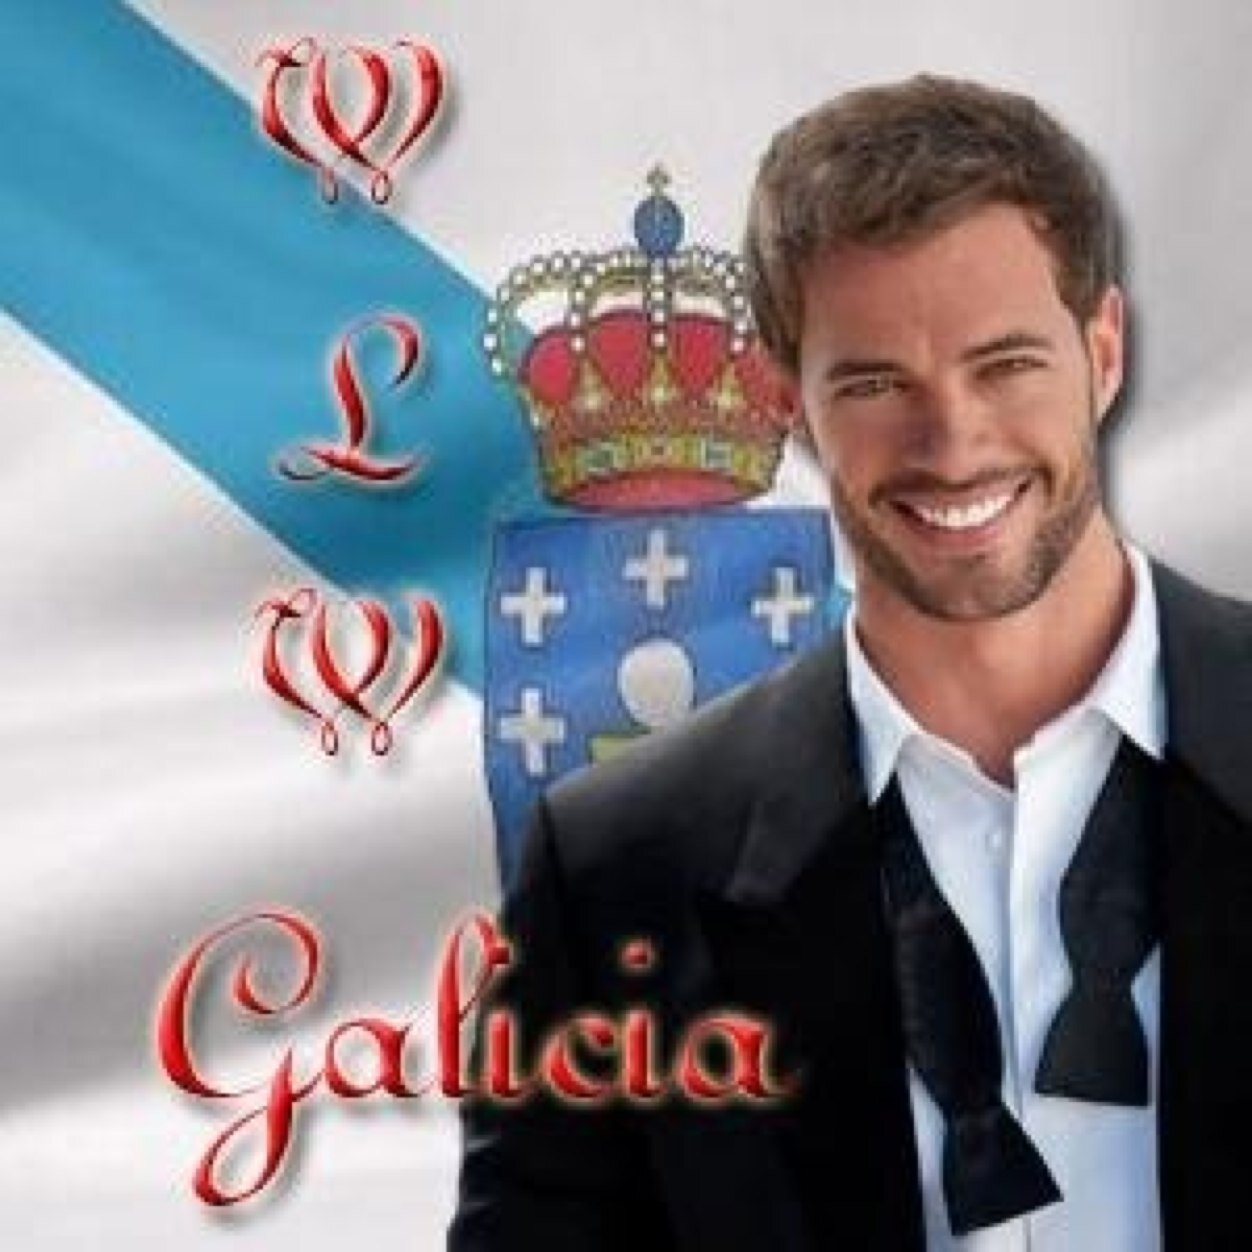 WLW_Galicia Profile Picture